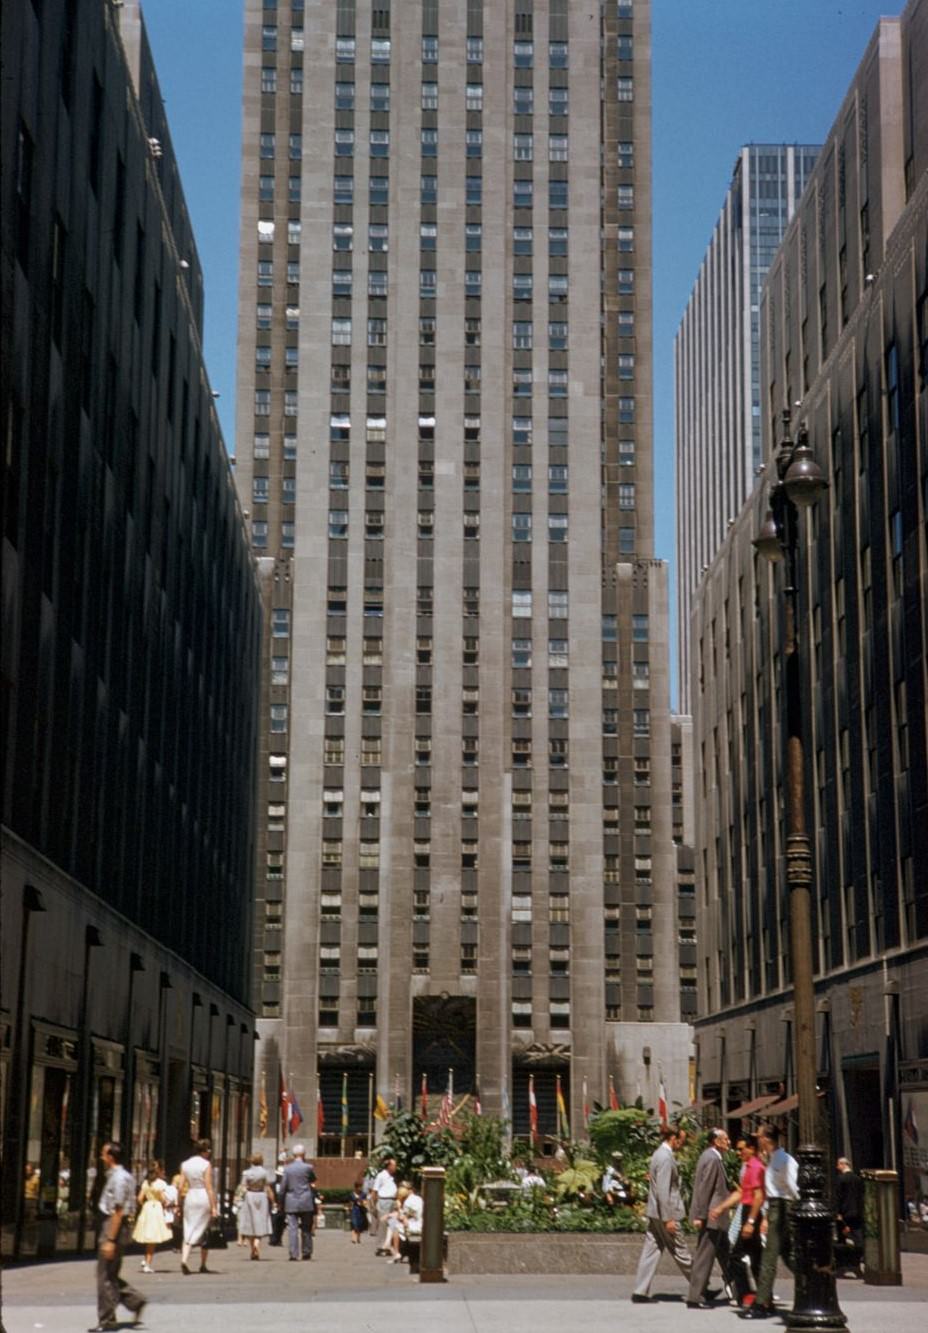 Rockefeller Plaza, 1960